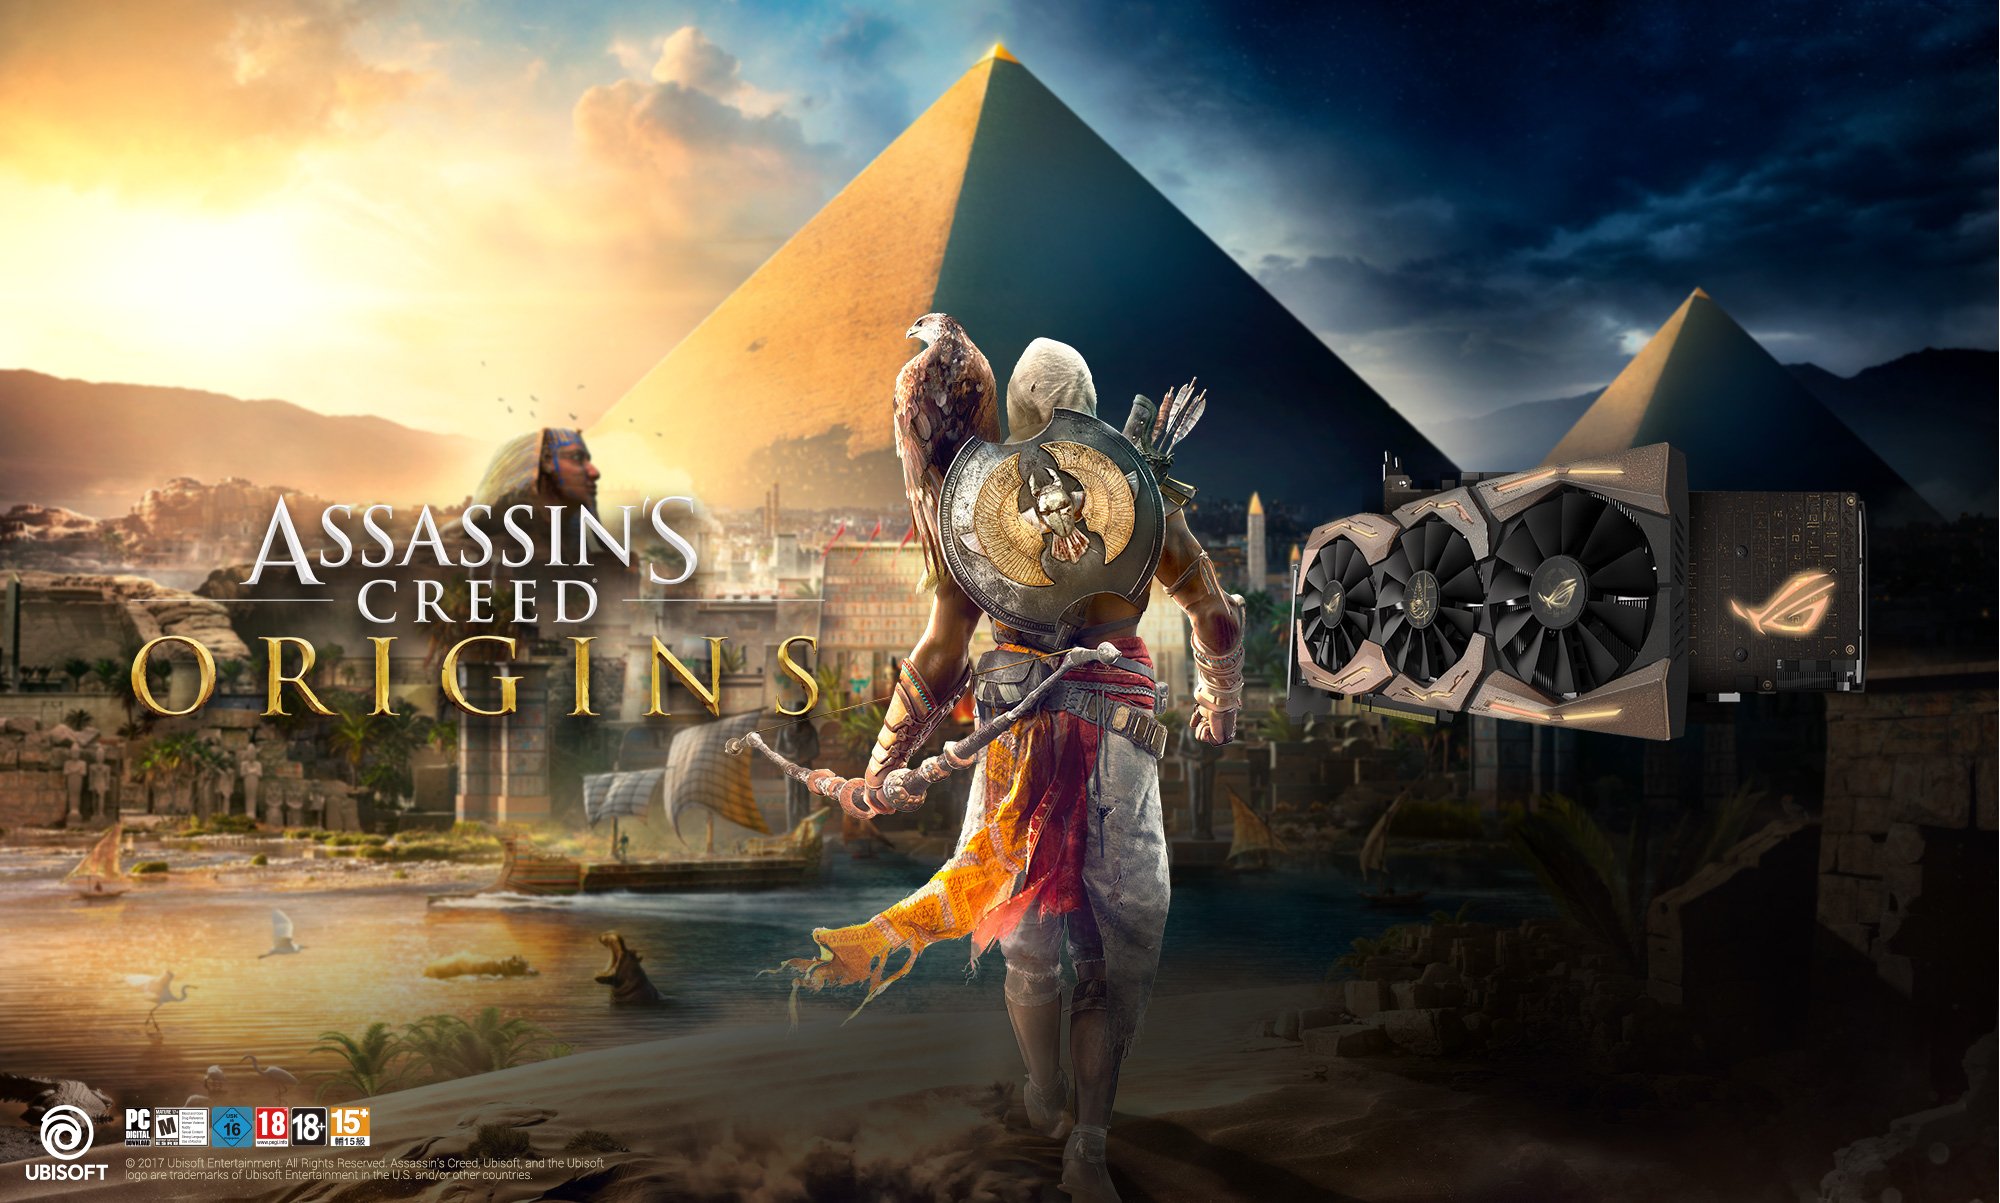 ASUS ROG Strix GeForce GTX 1080 Ti Assassins Creed Origins Edition Satışa Sunuldu